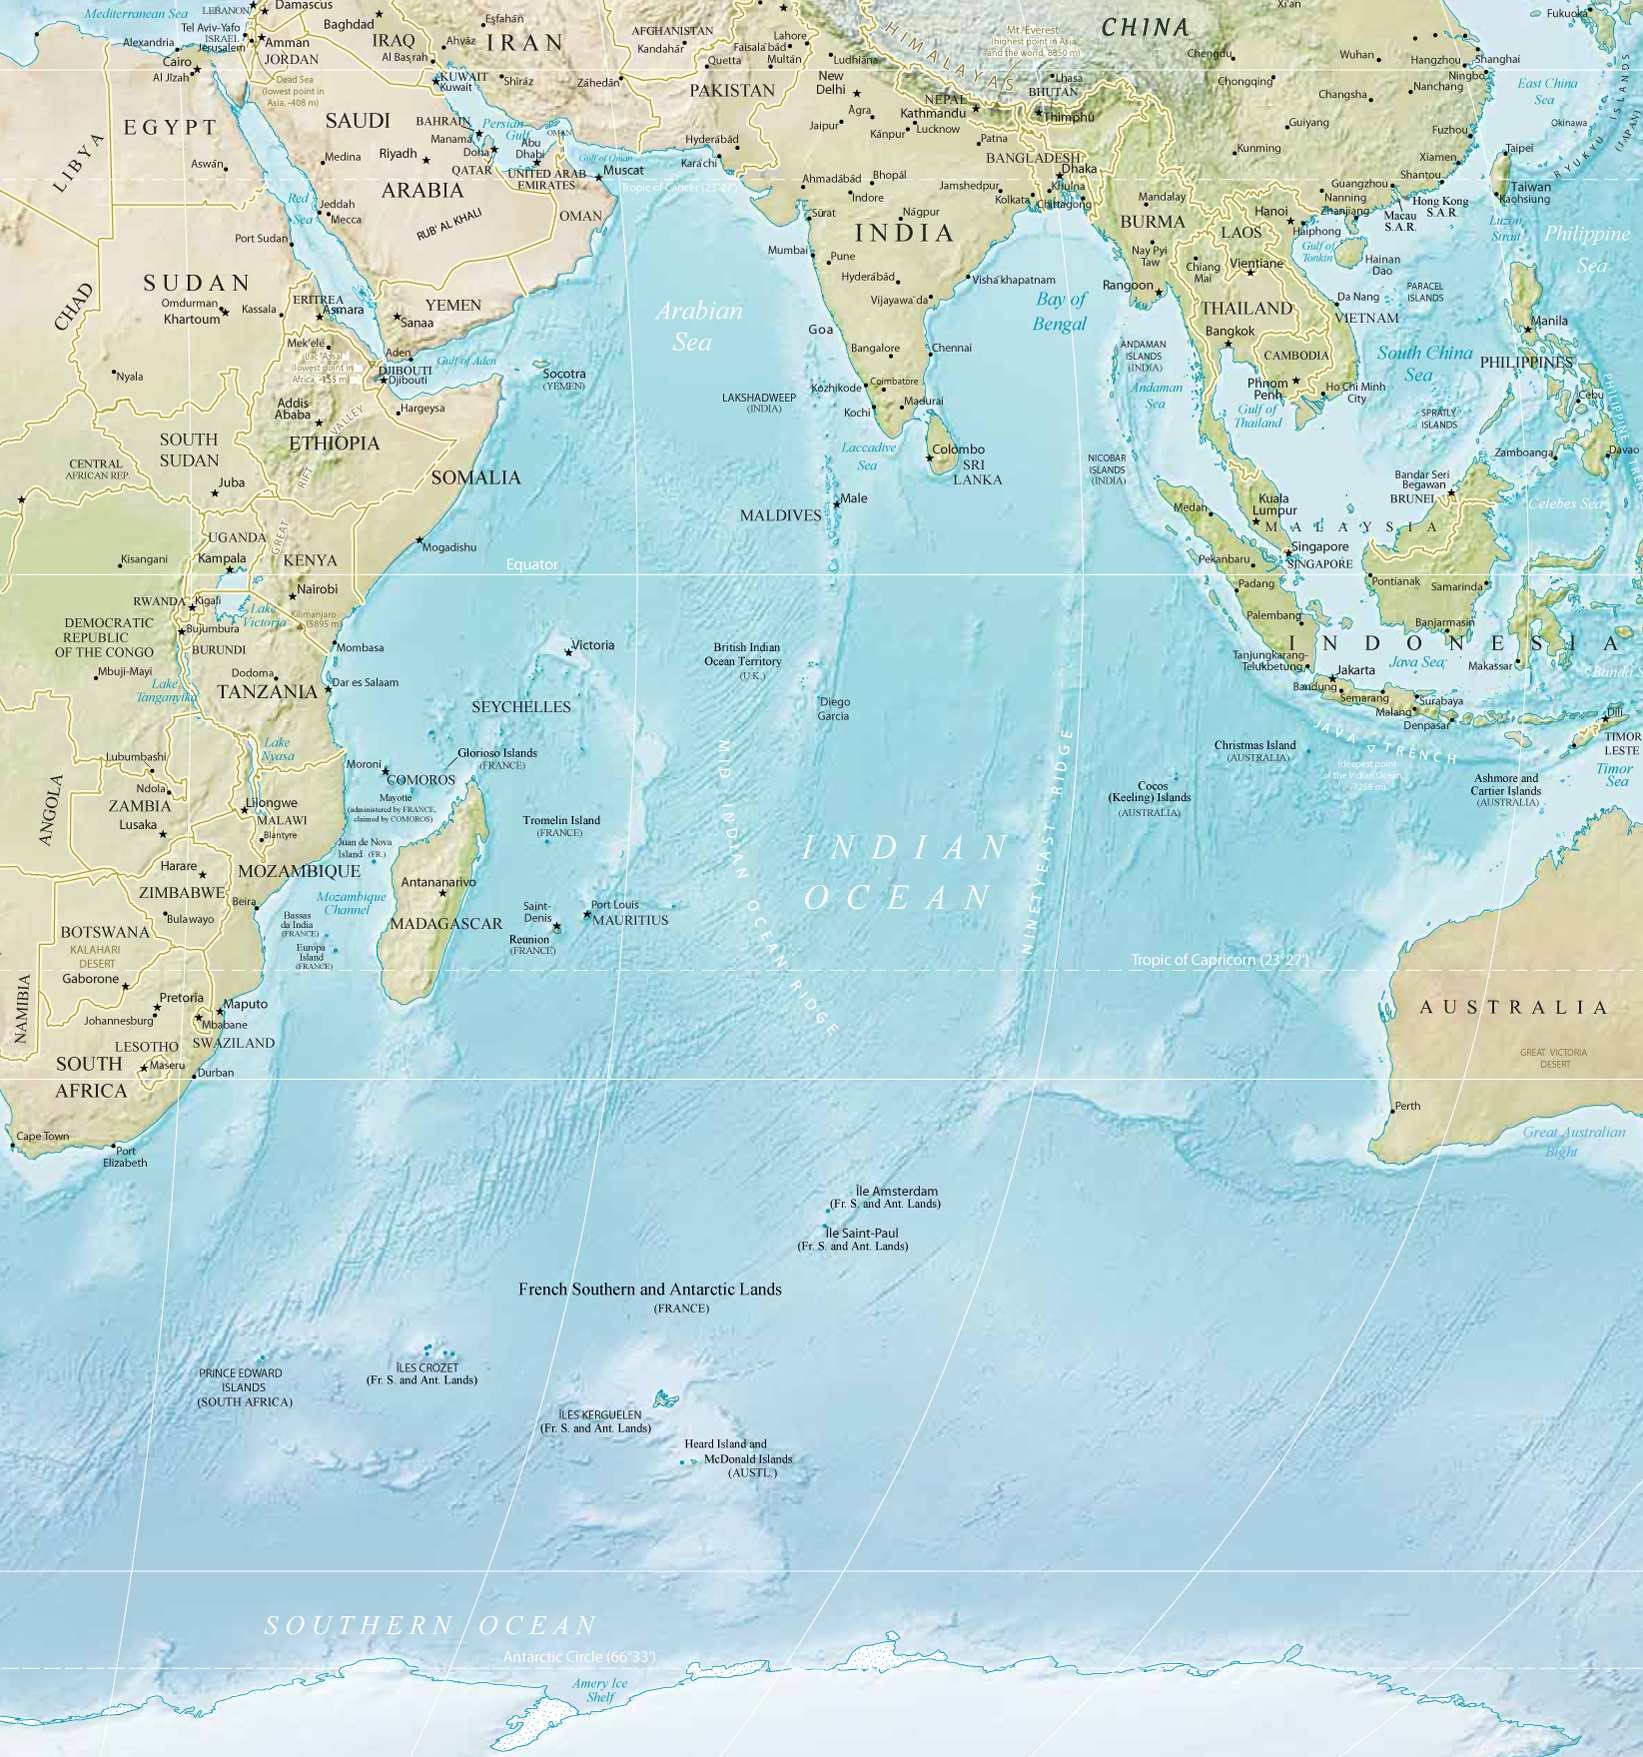 Indian Ocean Map - Indian Ocean Map With Islands - HD Wallpaper 